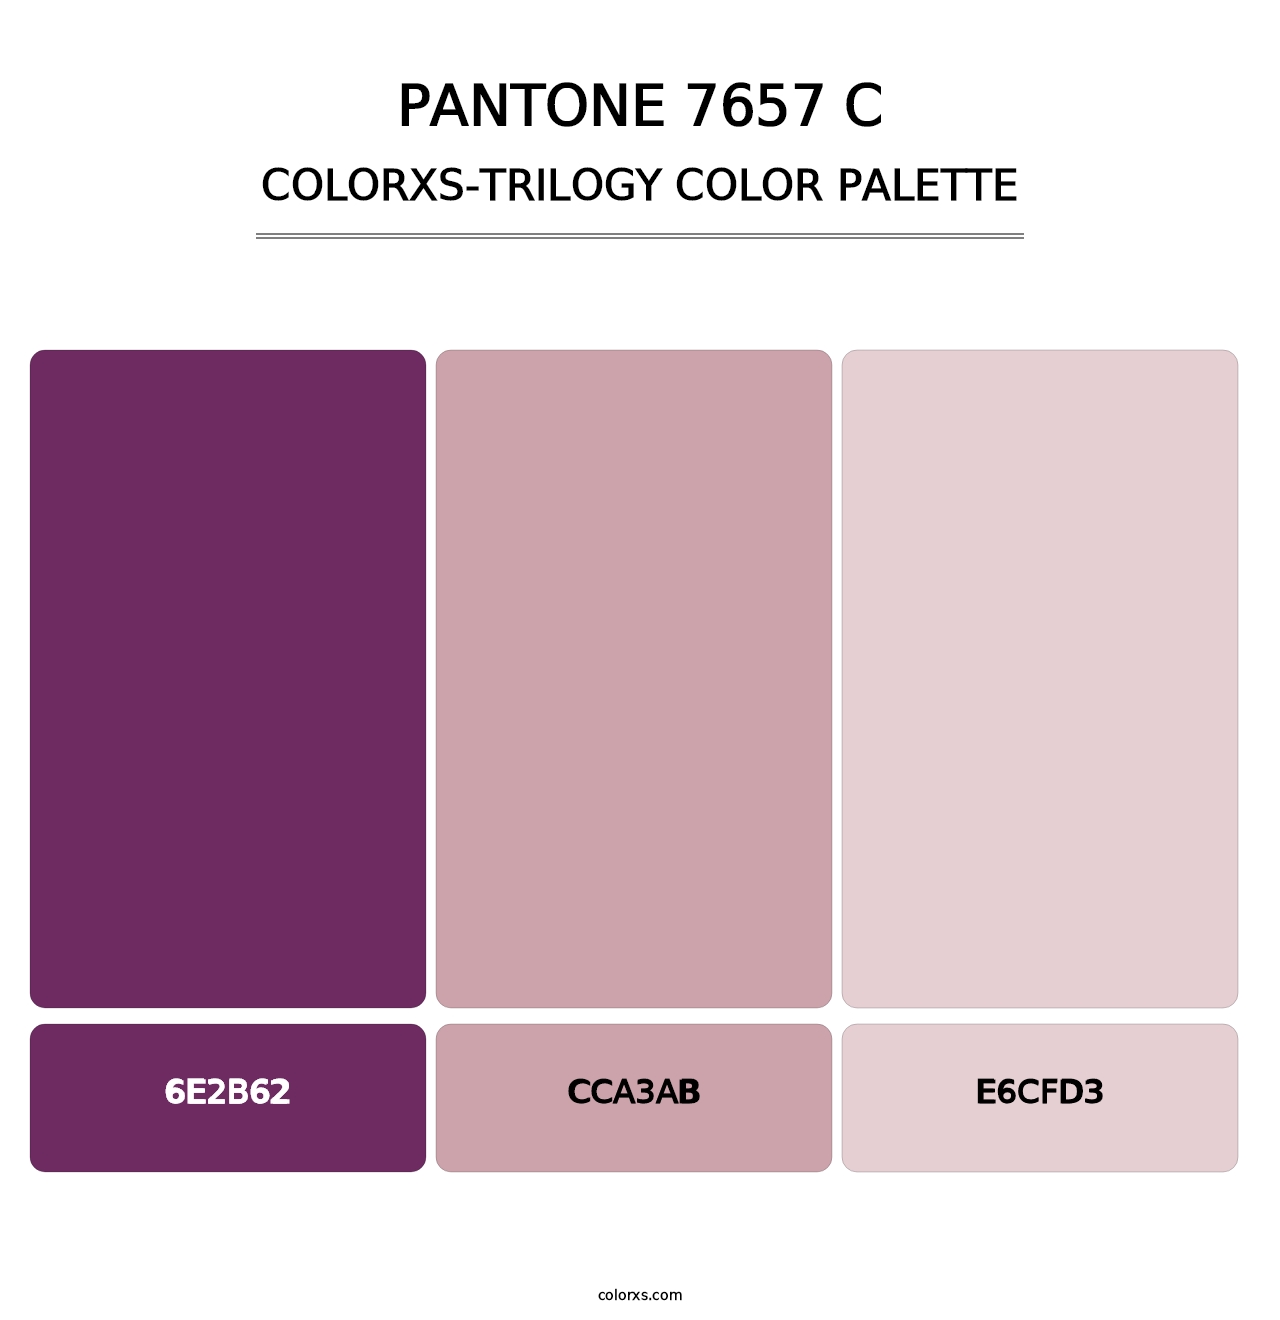 PANTONE 7657 C - Colorxs Trilogy Palette